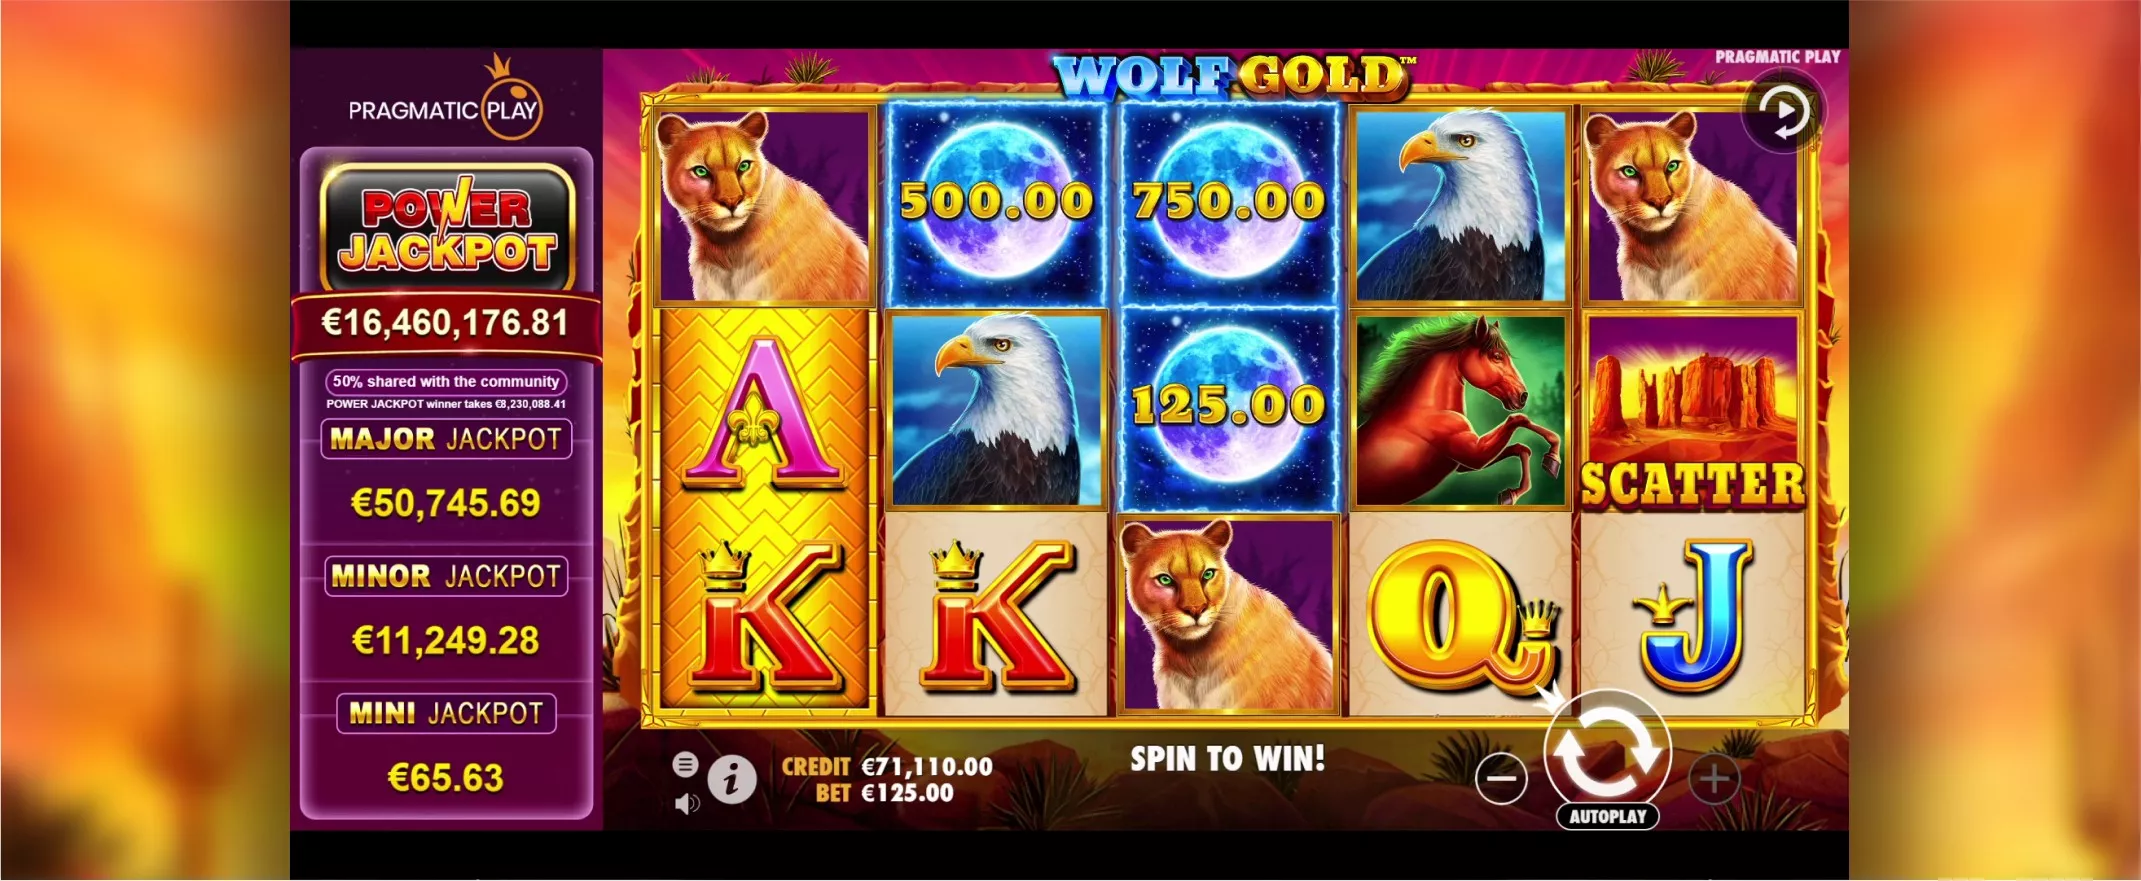 Captura de pantalla de Wolf Gold Power Jackpot